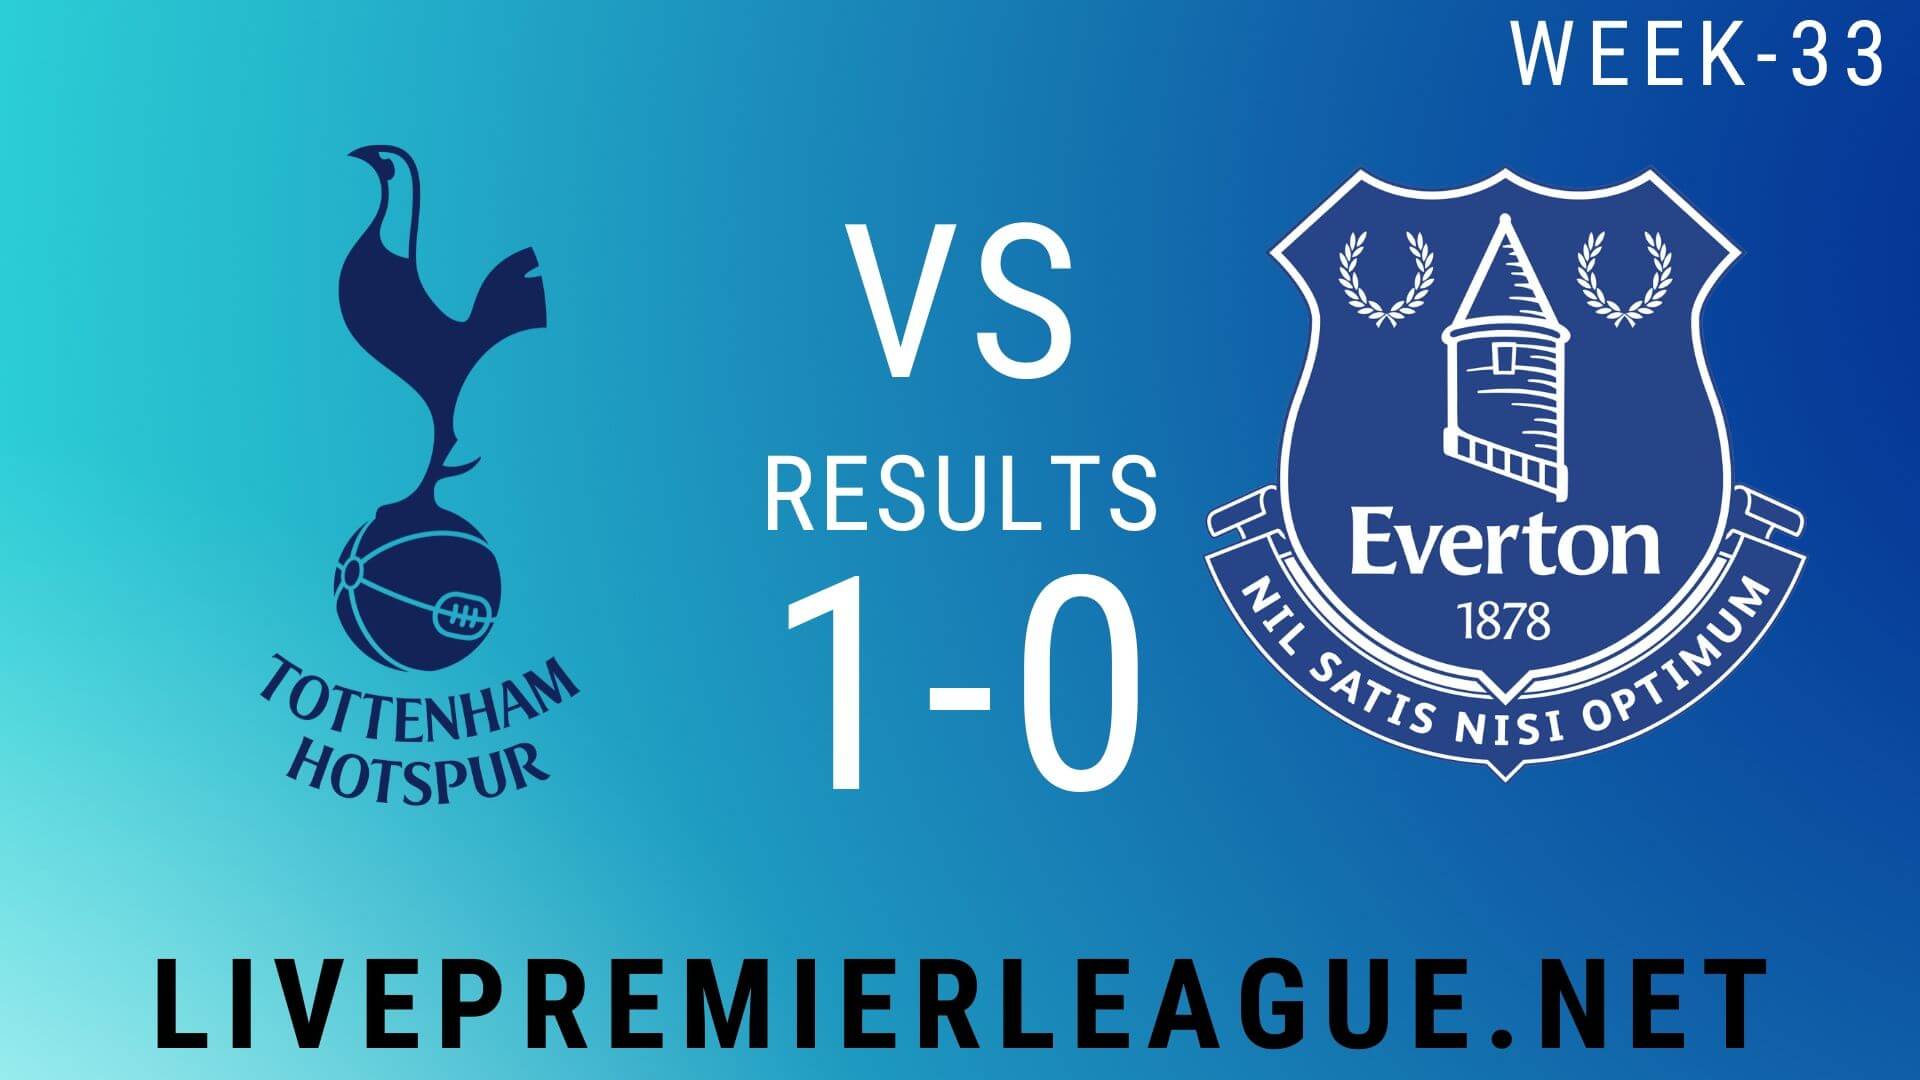 Tottenham Hotspur Vs Everton | Week 33 Result 2020